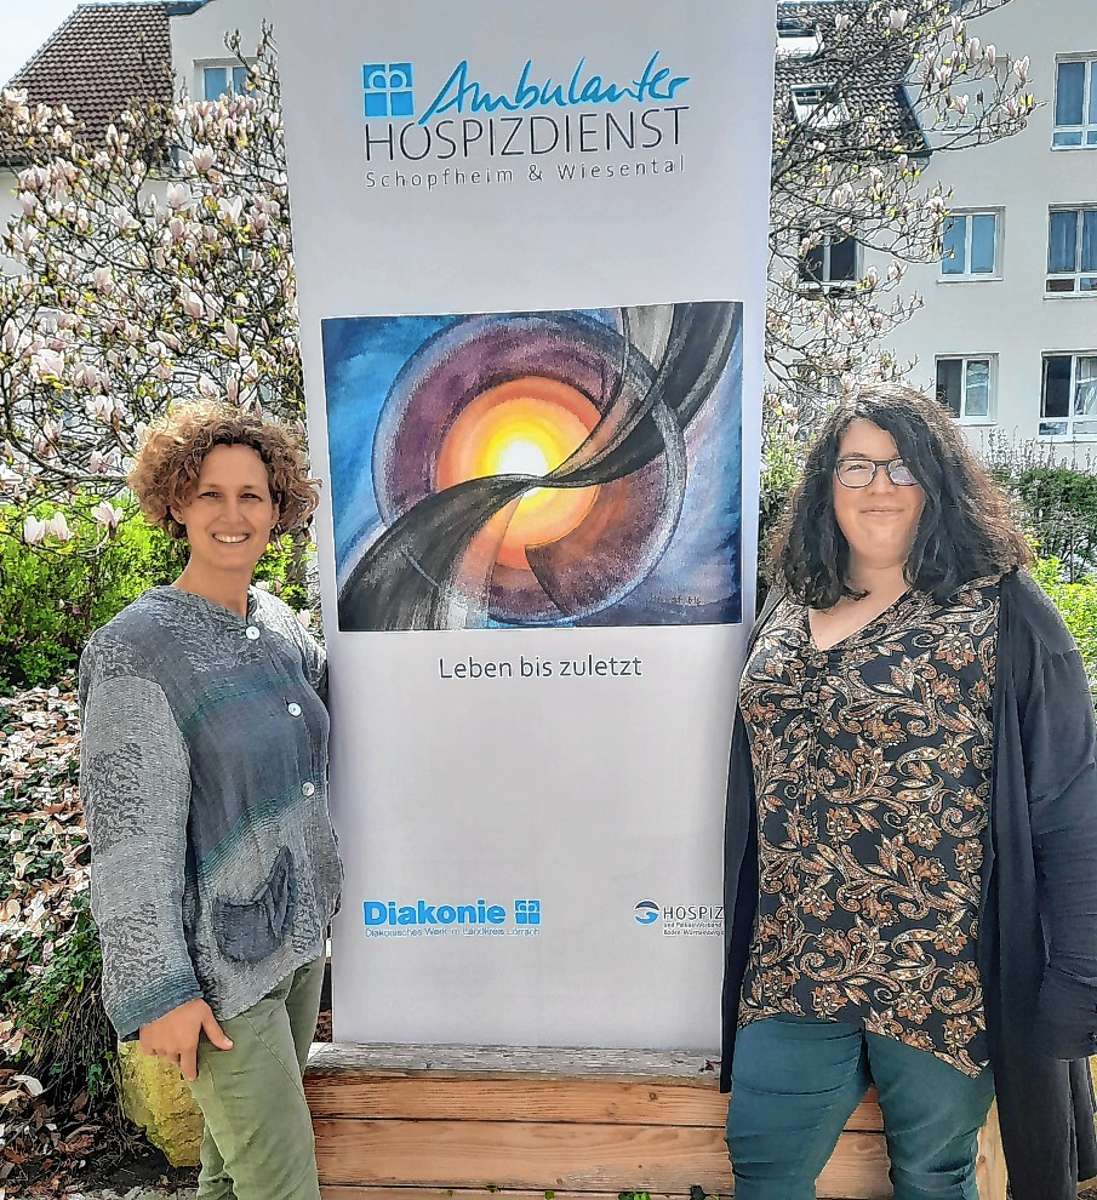 Wollen auf die wichtige Arbeit des ambulanten Hospizdiensts Schopfheim & Wiesental aufmerksam machen: die Koordinatorinnen Sofie Harscher und Kerstin Wunderle (von links).                                                                                                                                         